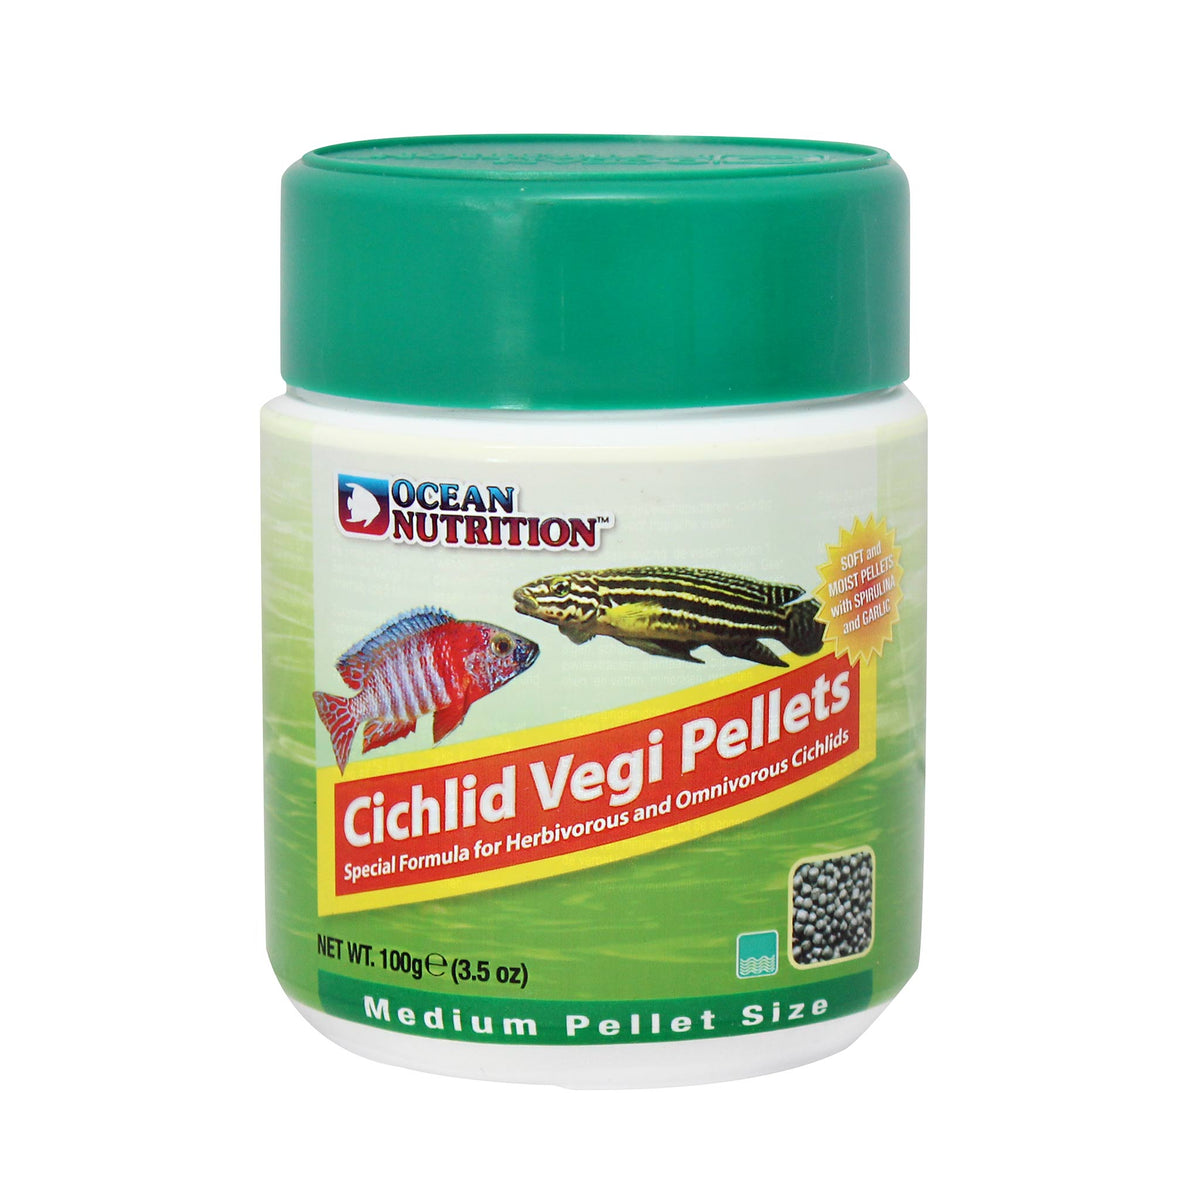 Ocean Nutrition Cichlid Vegi Pellets